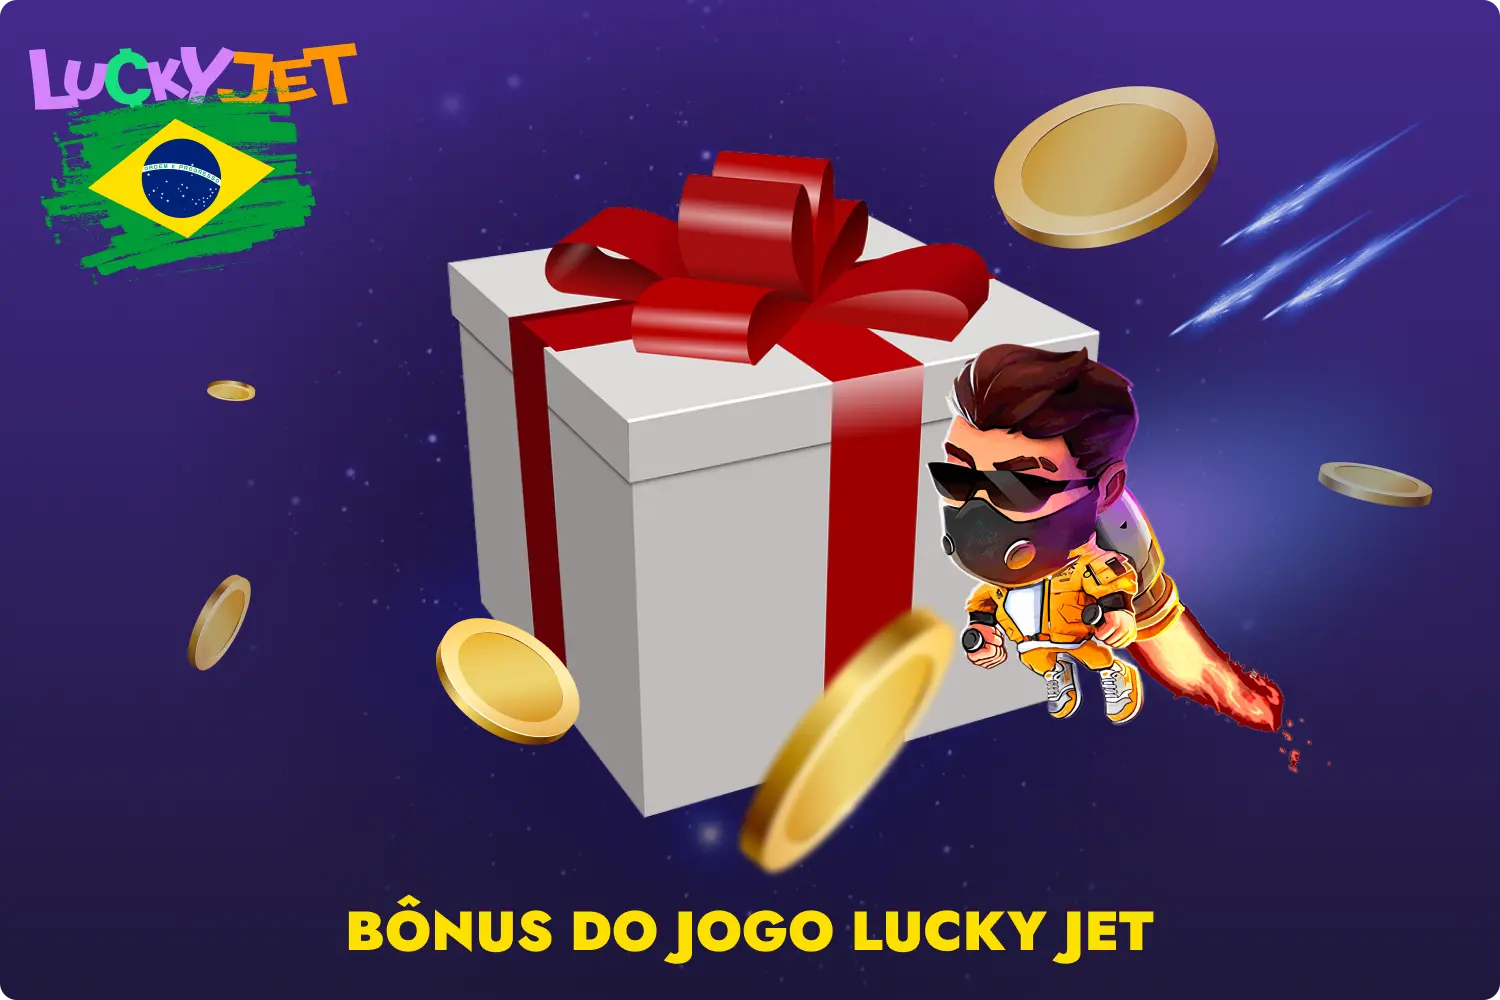 1win oferece aos jogadores brasileiros uma série de promoções que podem ser utilizadas no jogo Lucky Jet